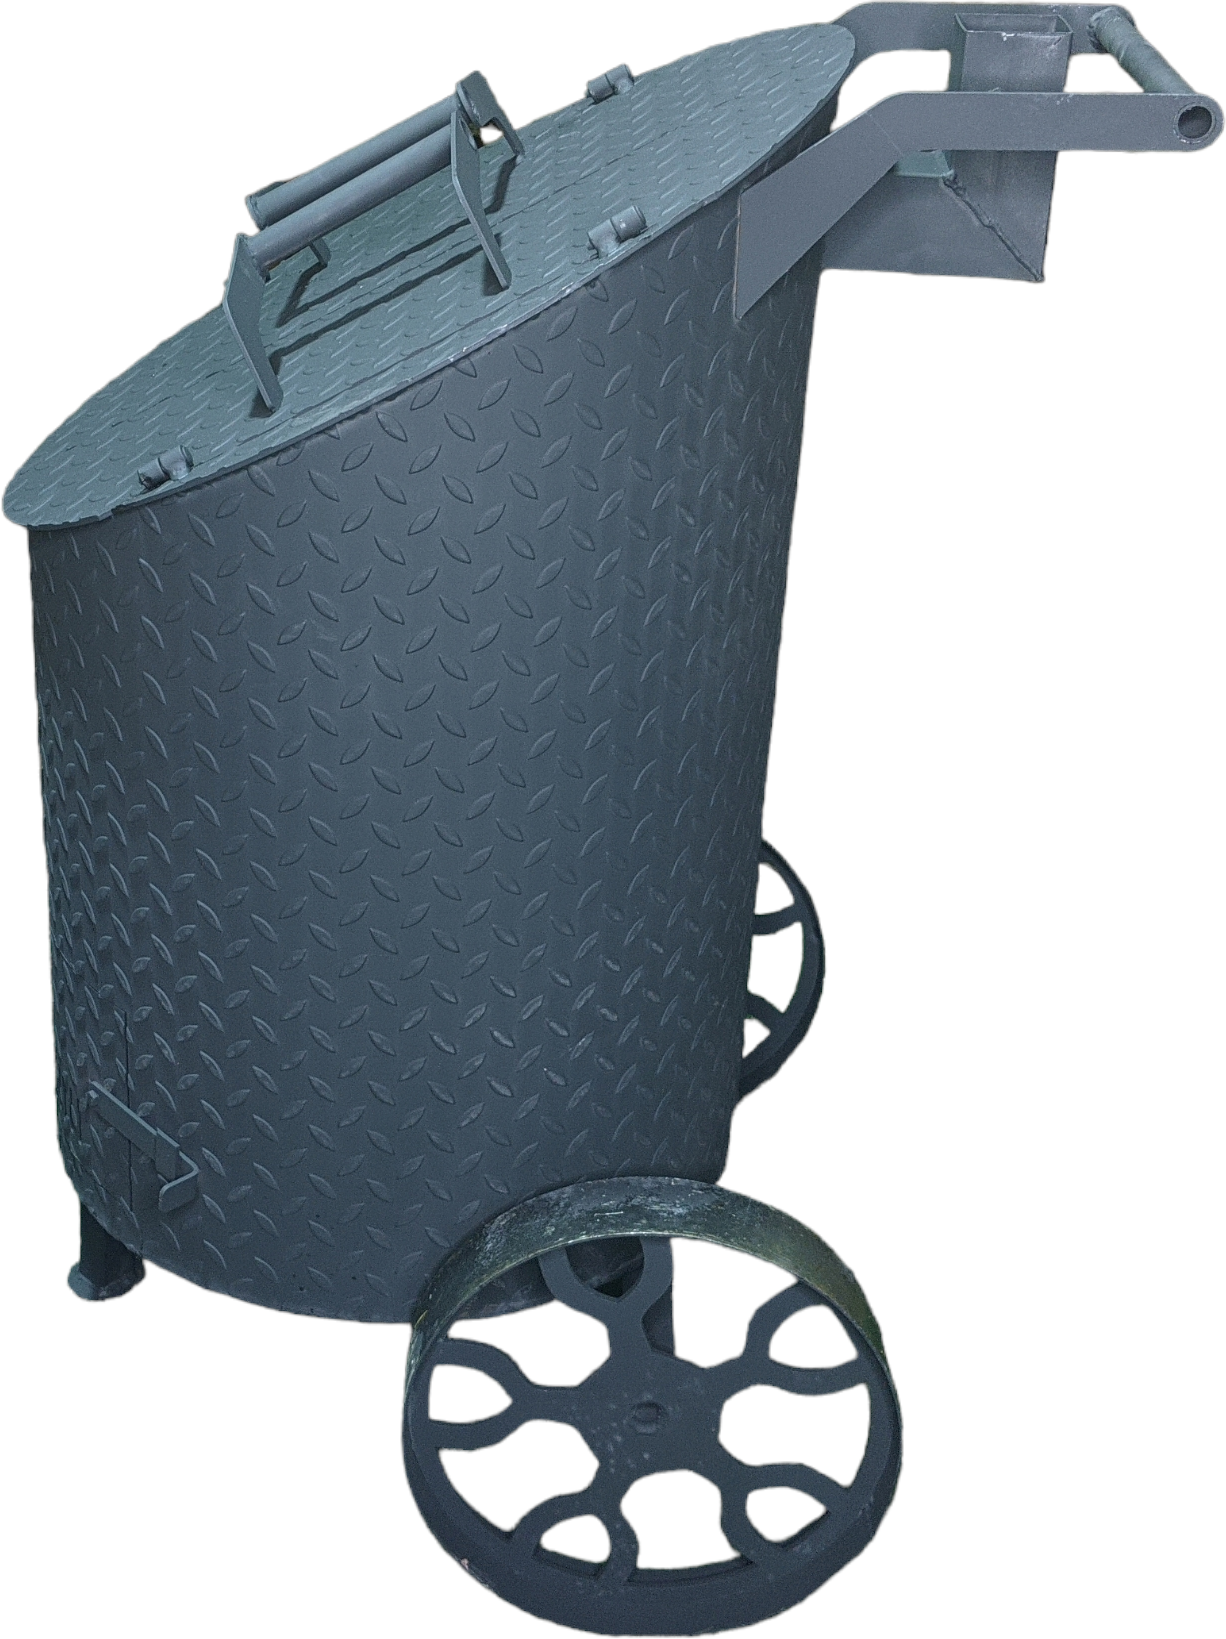 Бочка для сжигания мусора с двойными дверцами 140 литров  косая с колосником и дымоходом